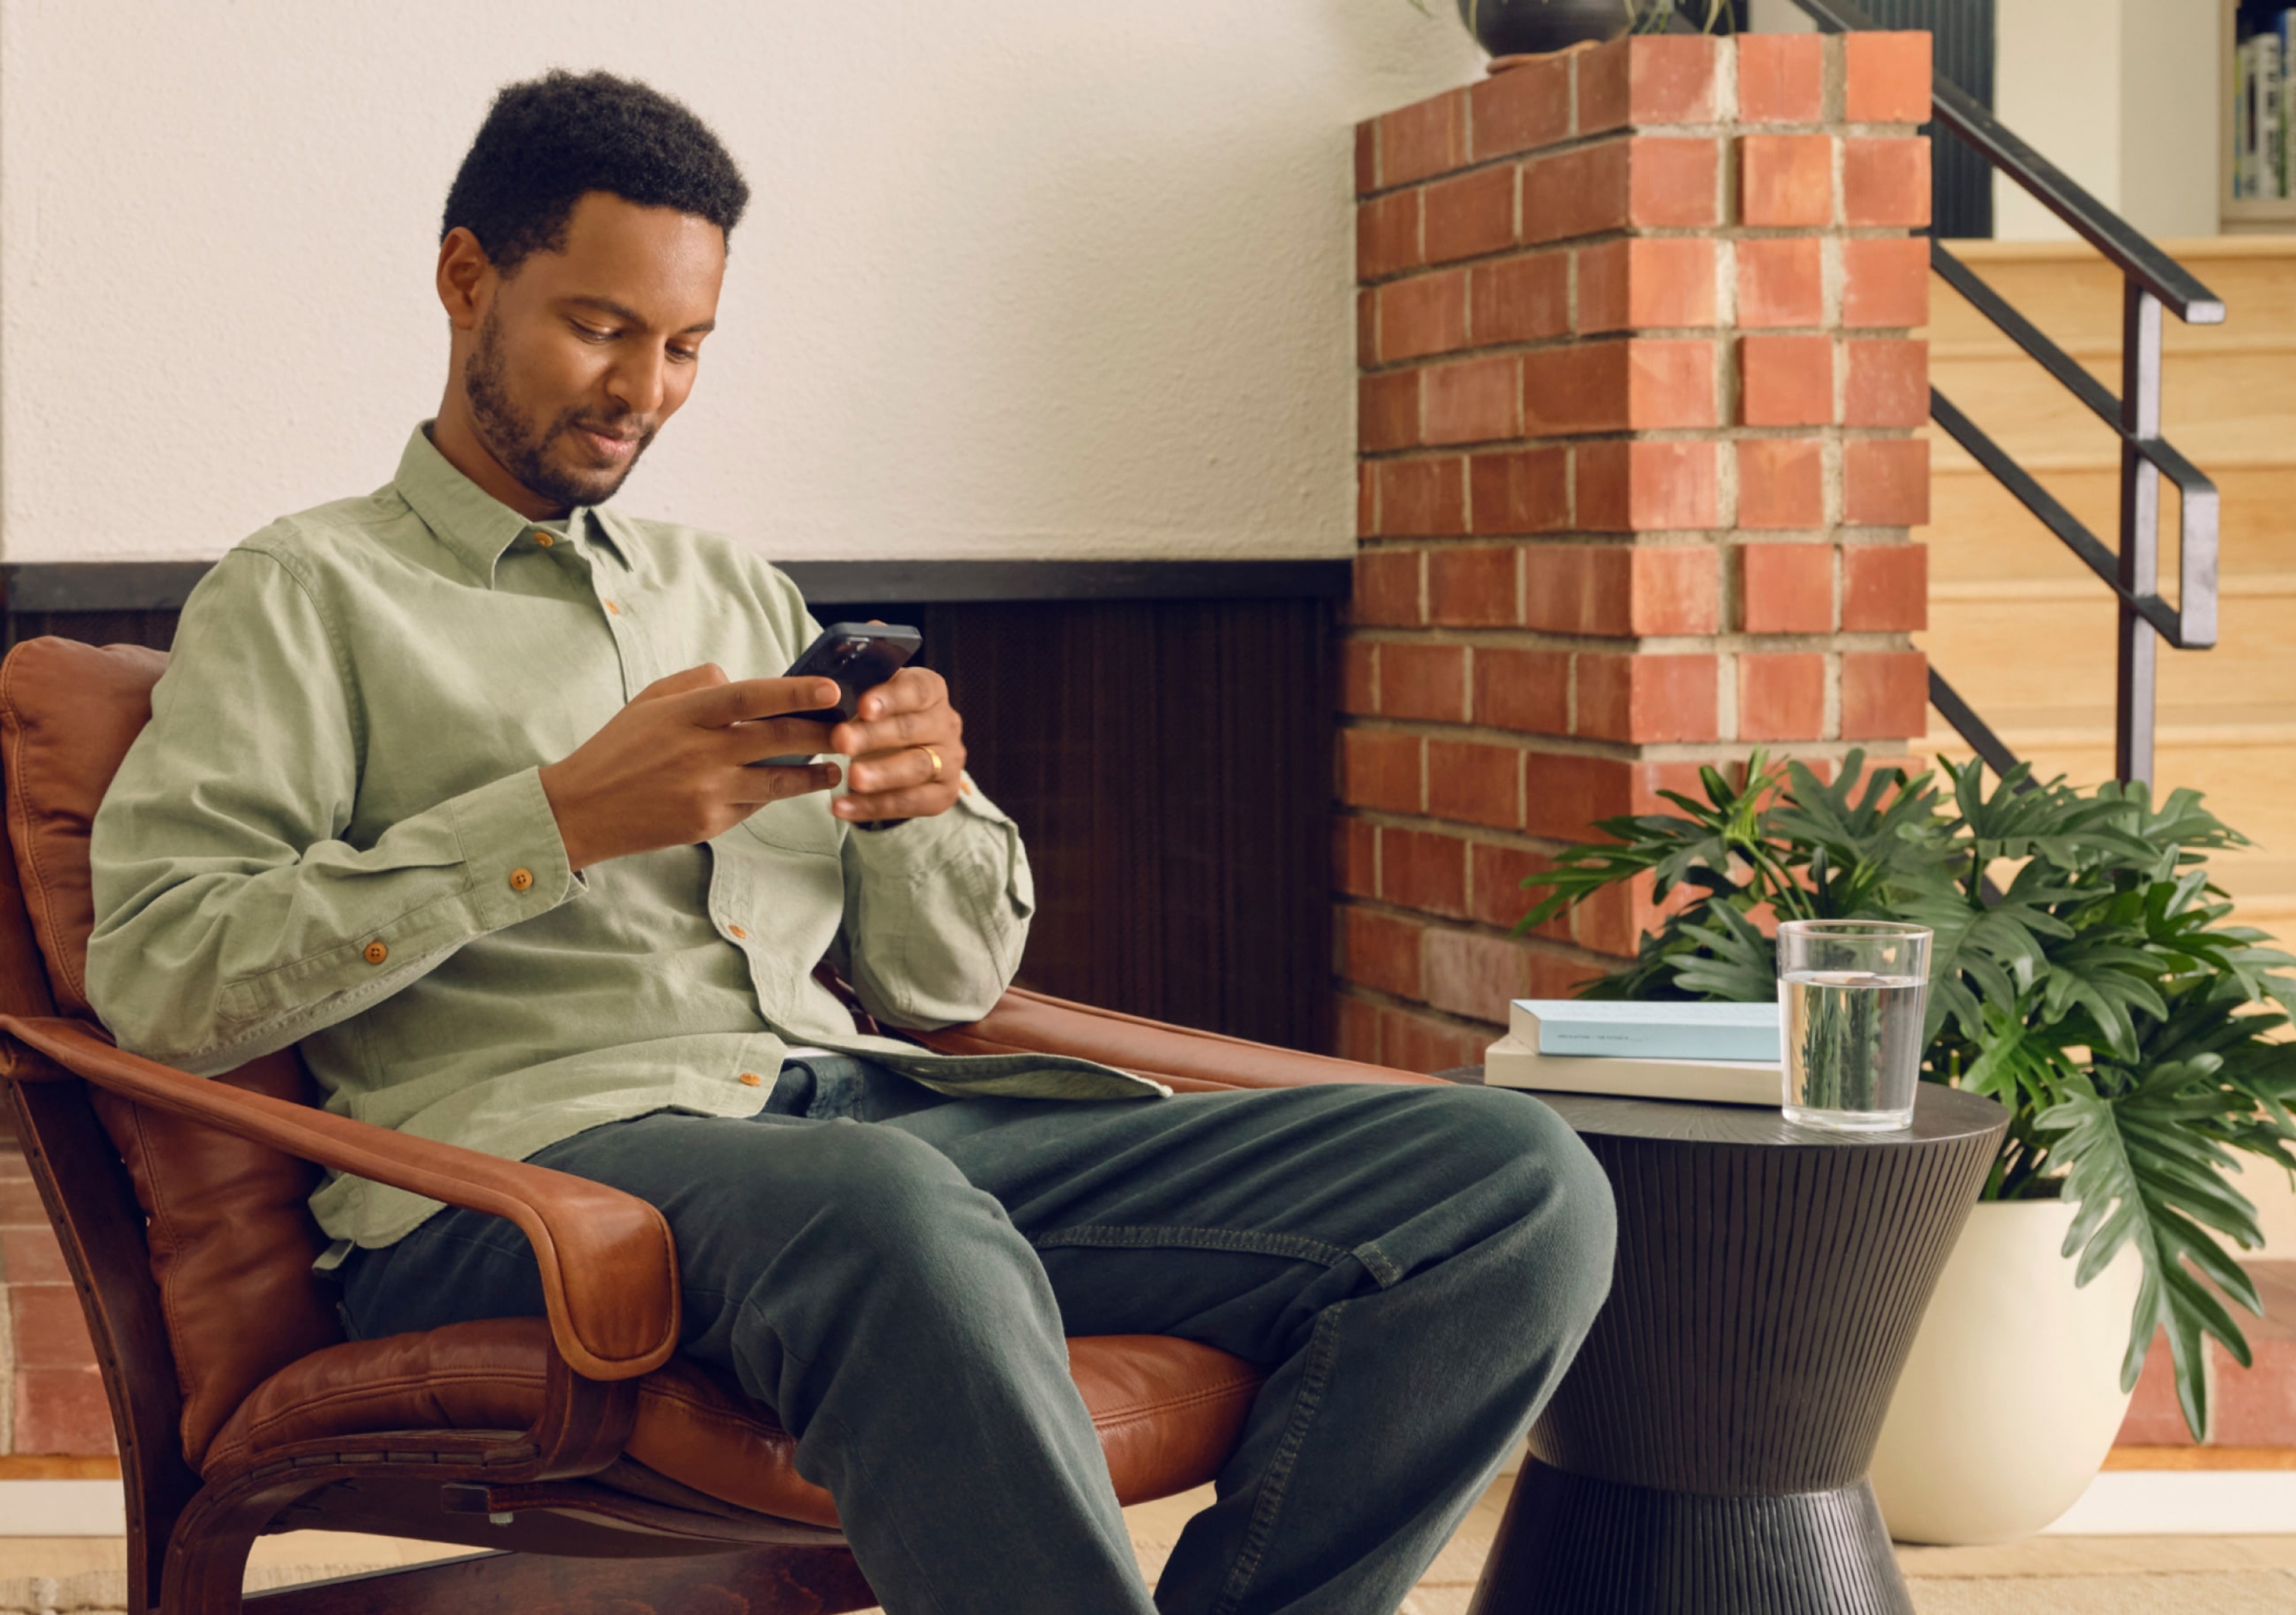 Utilisateur de l’application Sonos au téléphone, assis dans son salon